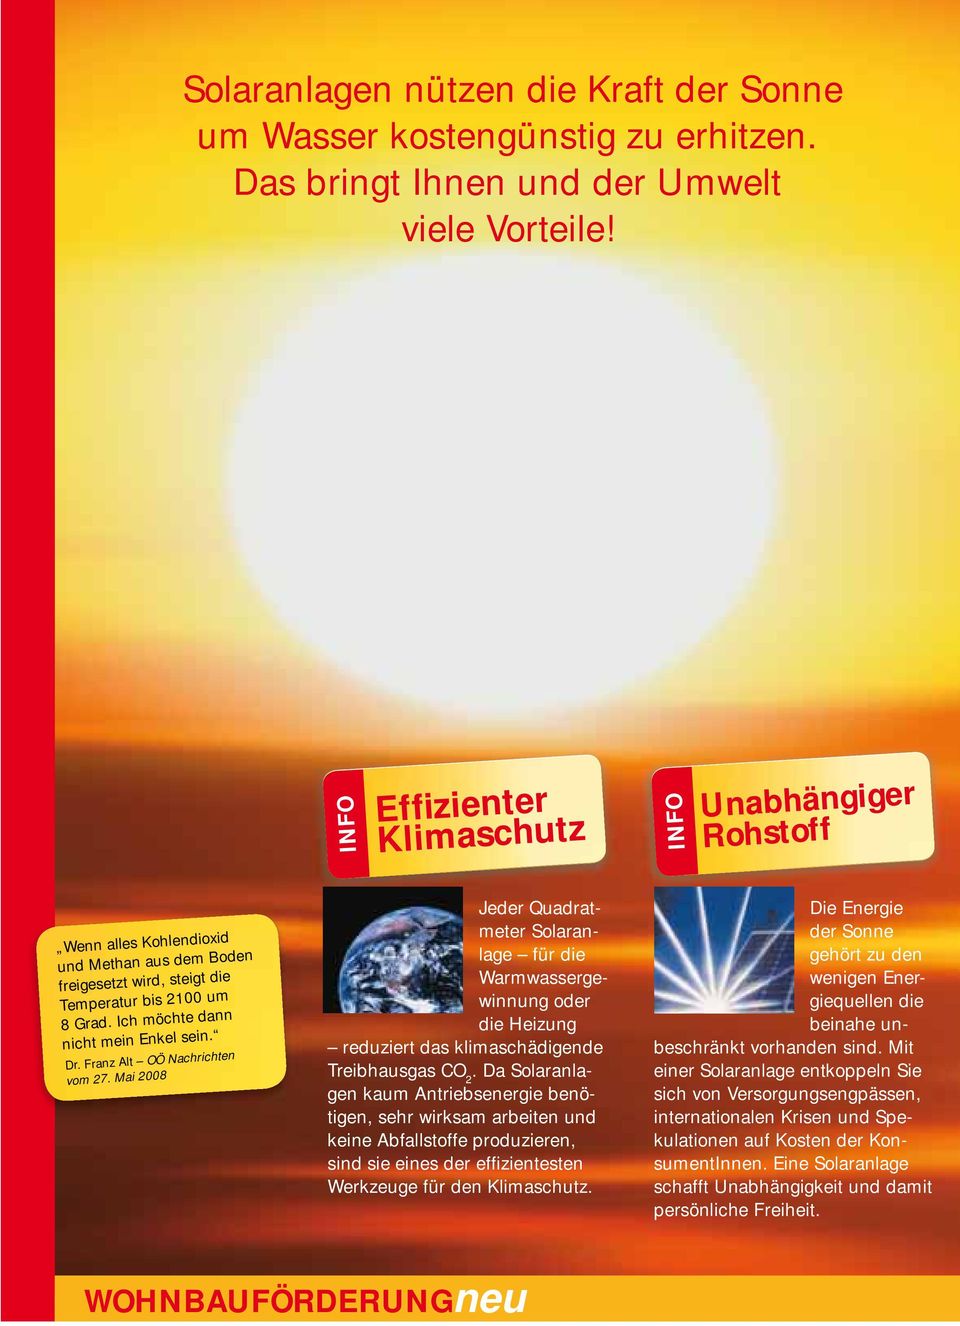 Franz Alt OÖ Nachrichten vom 27. Mai 2008 Jeder Quadratmeter Solaranlage für die Warmwassergewinnung oder die Heizung reduziert das klimaschädigende Treibhausgas CO 2.